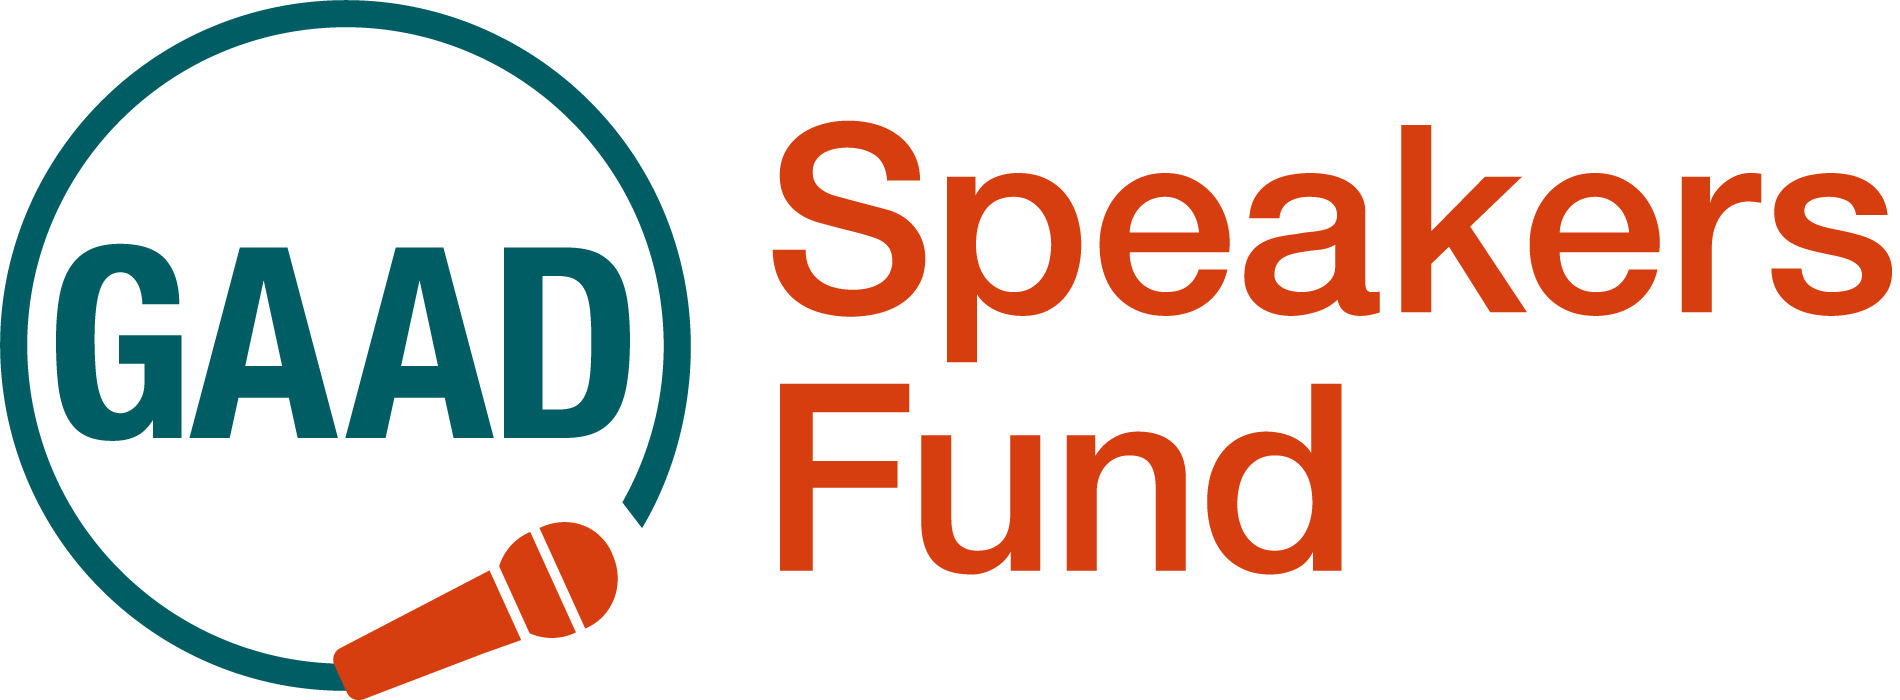 GAAD Speaker Fund